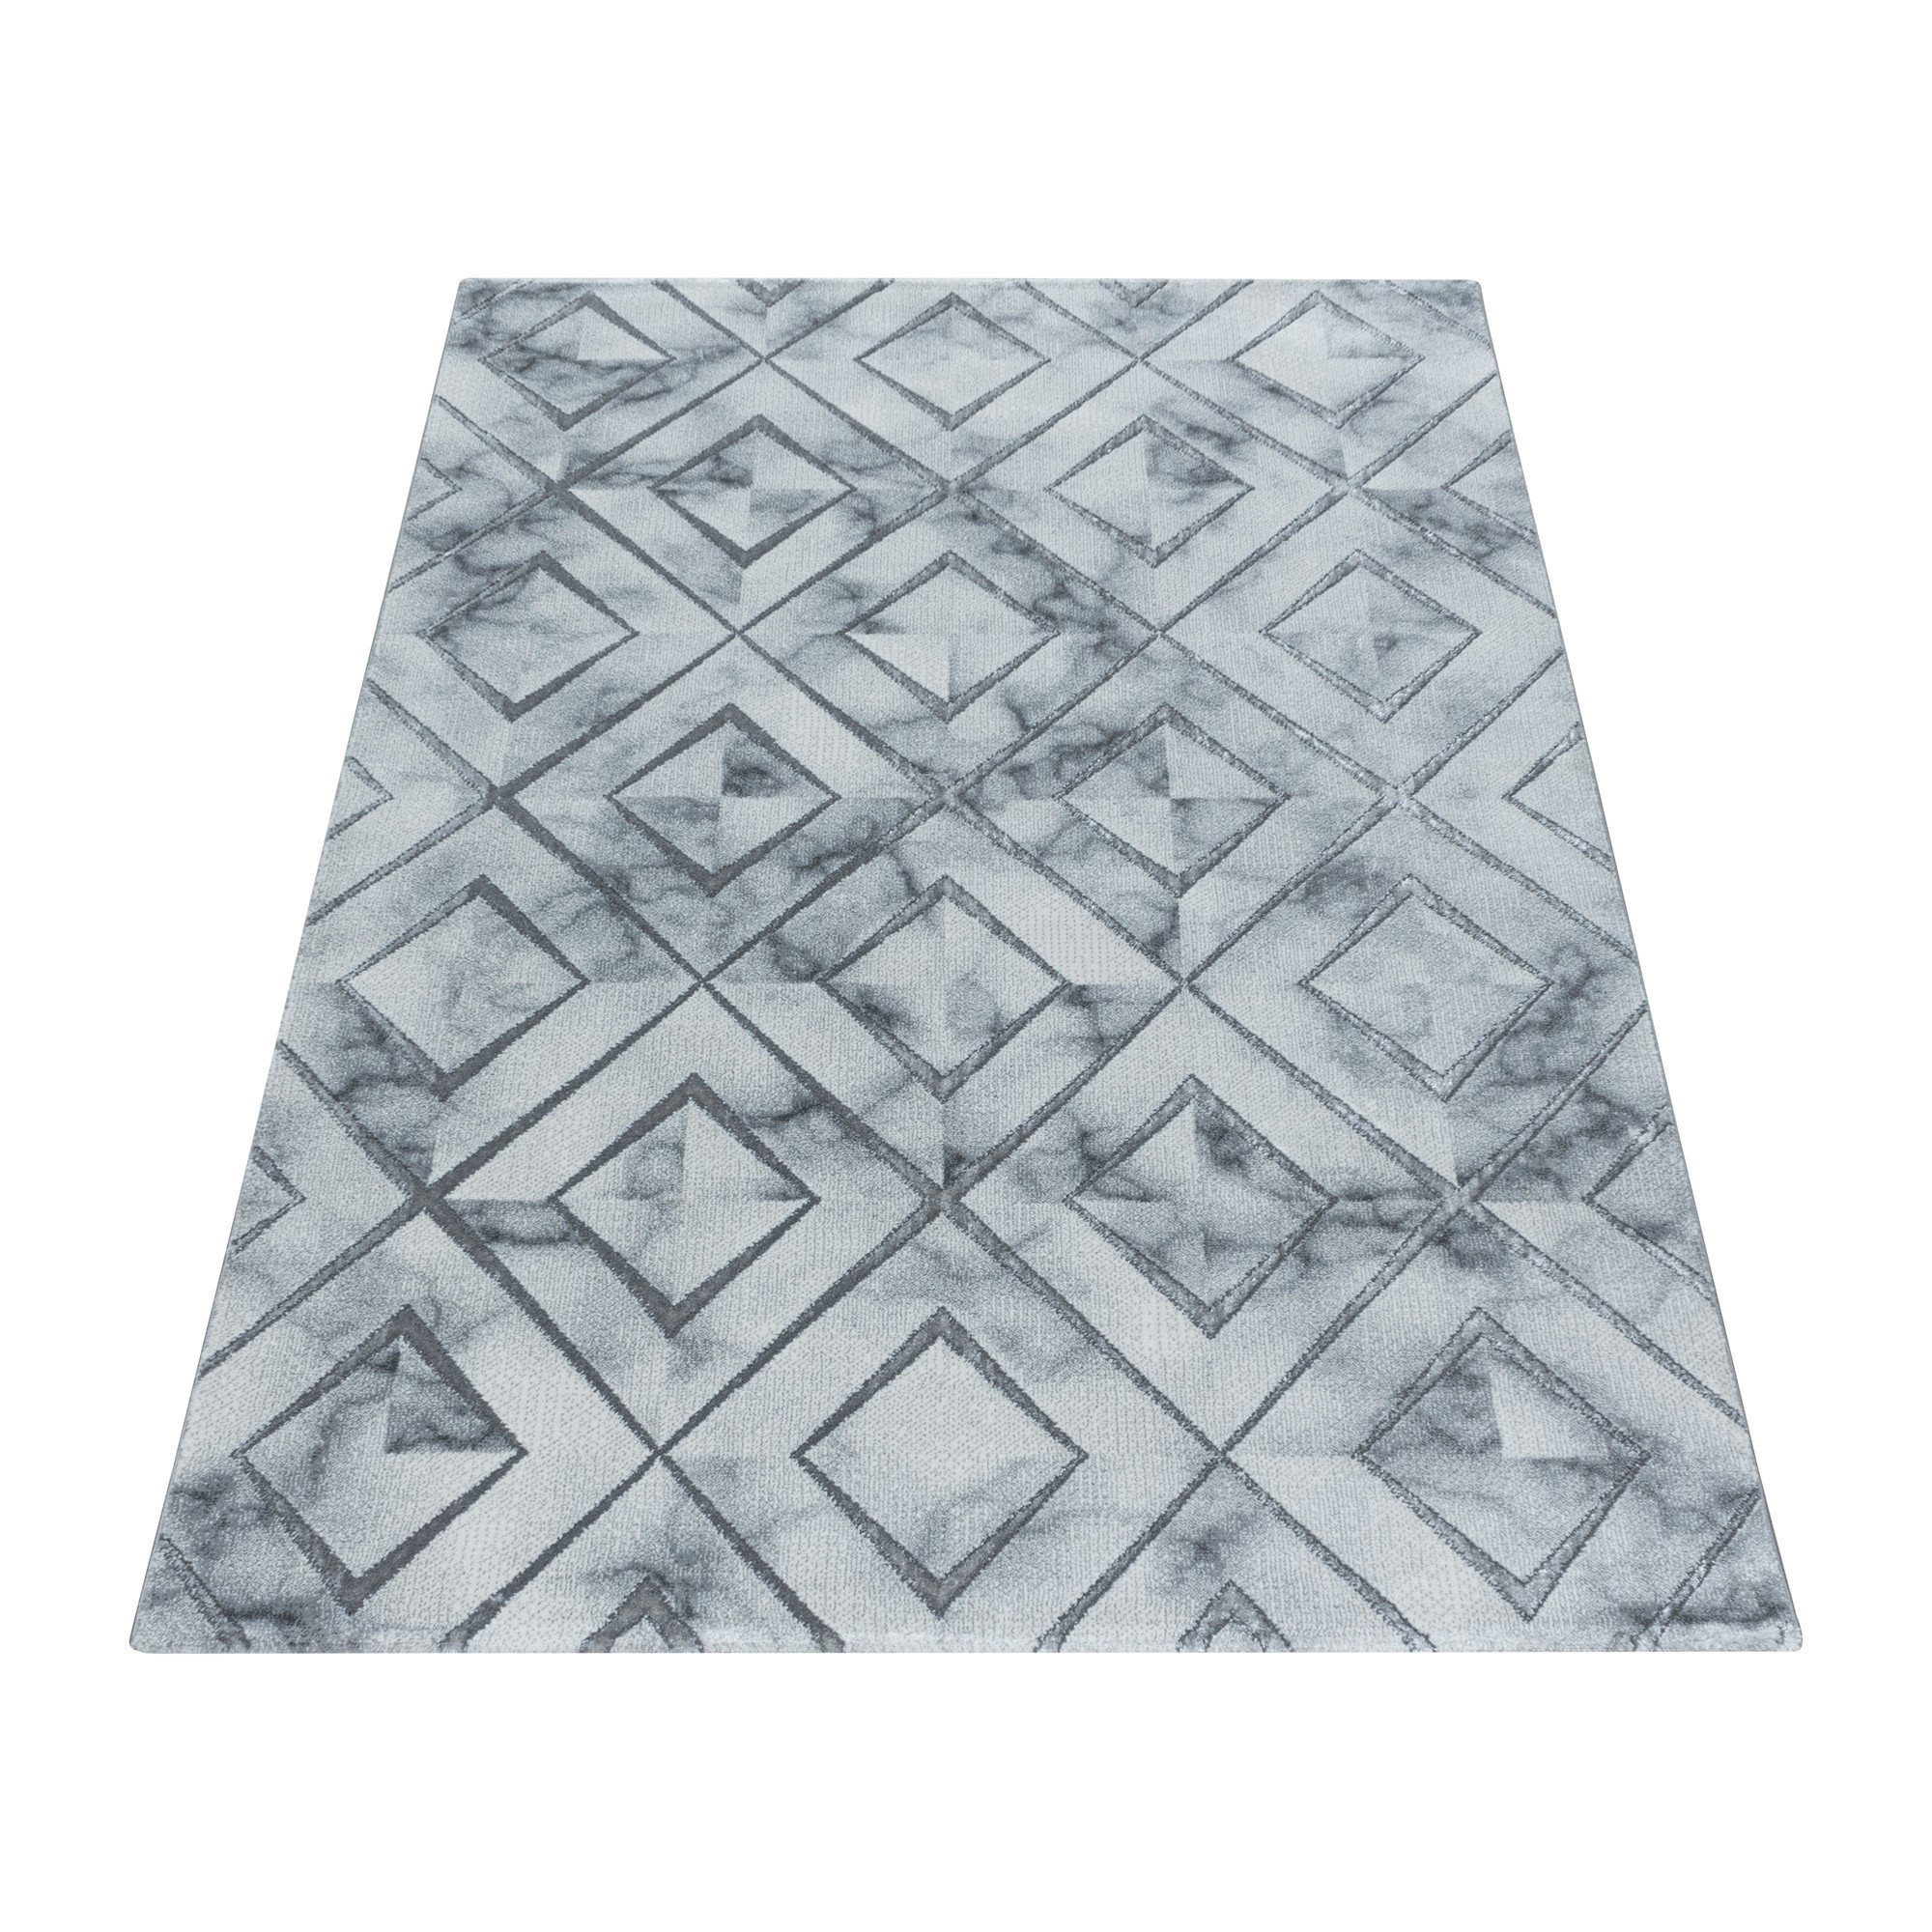 Designteppich Marmoroptik Flachflorteppich Kurzflorteppich Wohnzimmer Muster, Angeycasa Silber